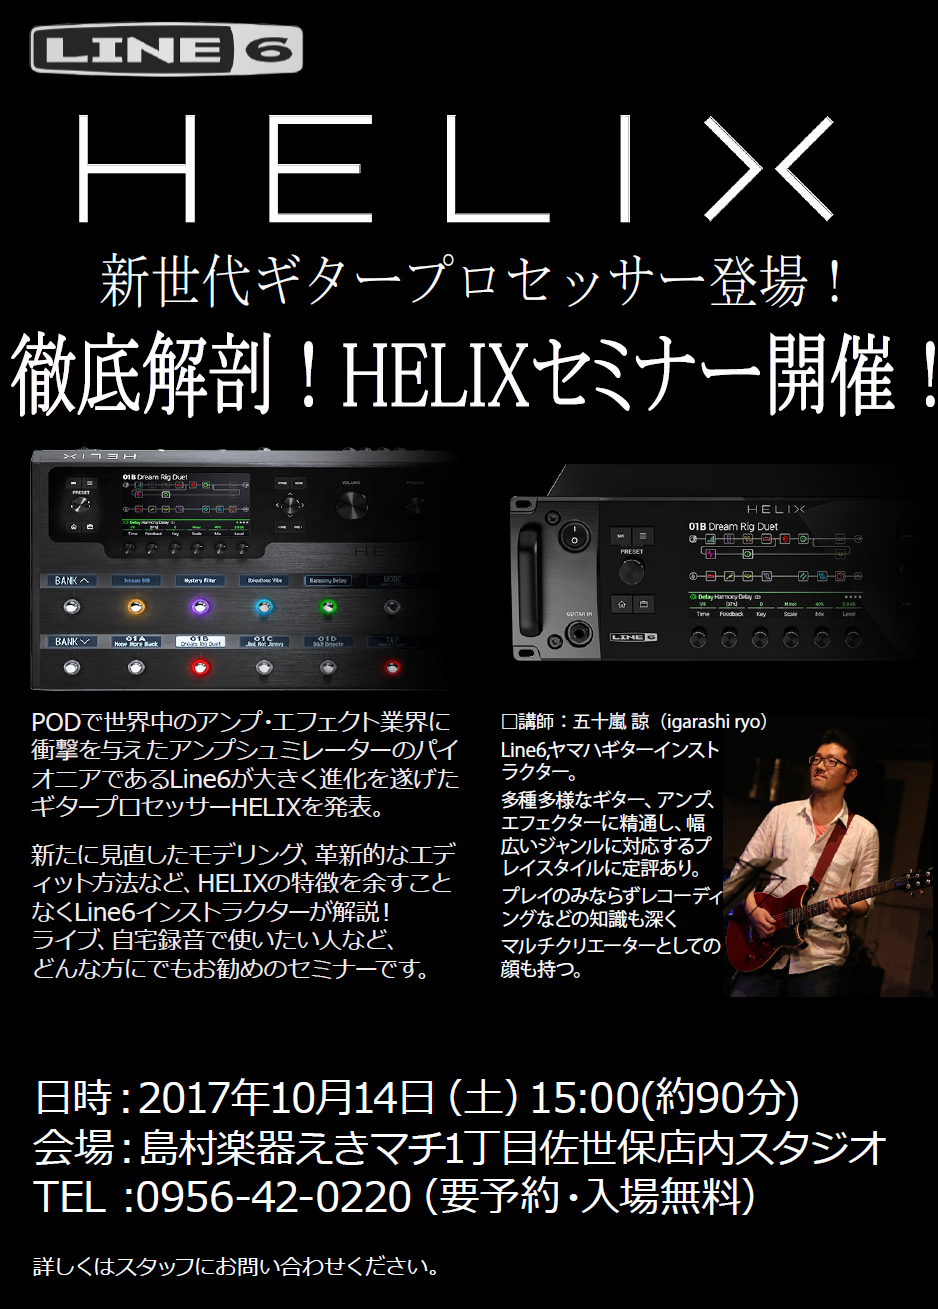 *HELIXデモンストレーションセミナー開催！ アンプ・エフェクターのパイオニア、LINE6から登場したギタープロセッサーHelixを使ってのデモンストレーションセミナーを開講します！Helixの使い方からモデリング、エディット方法などHelixの特徴を余すところなくLINE6のインストラクターが実 […]